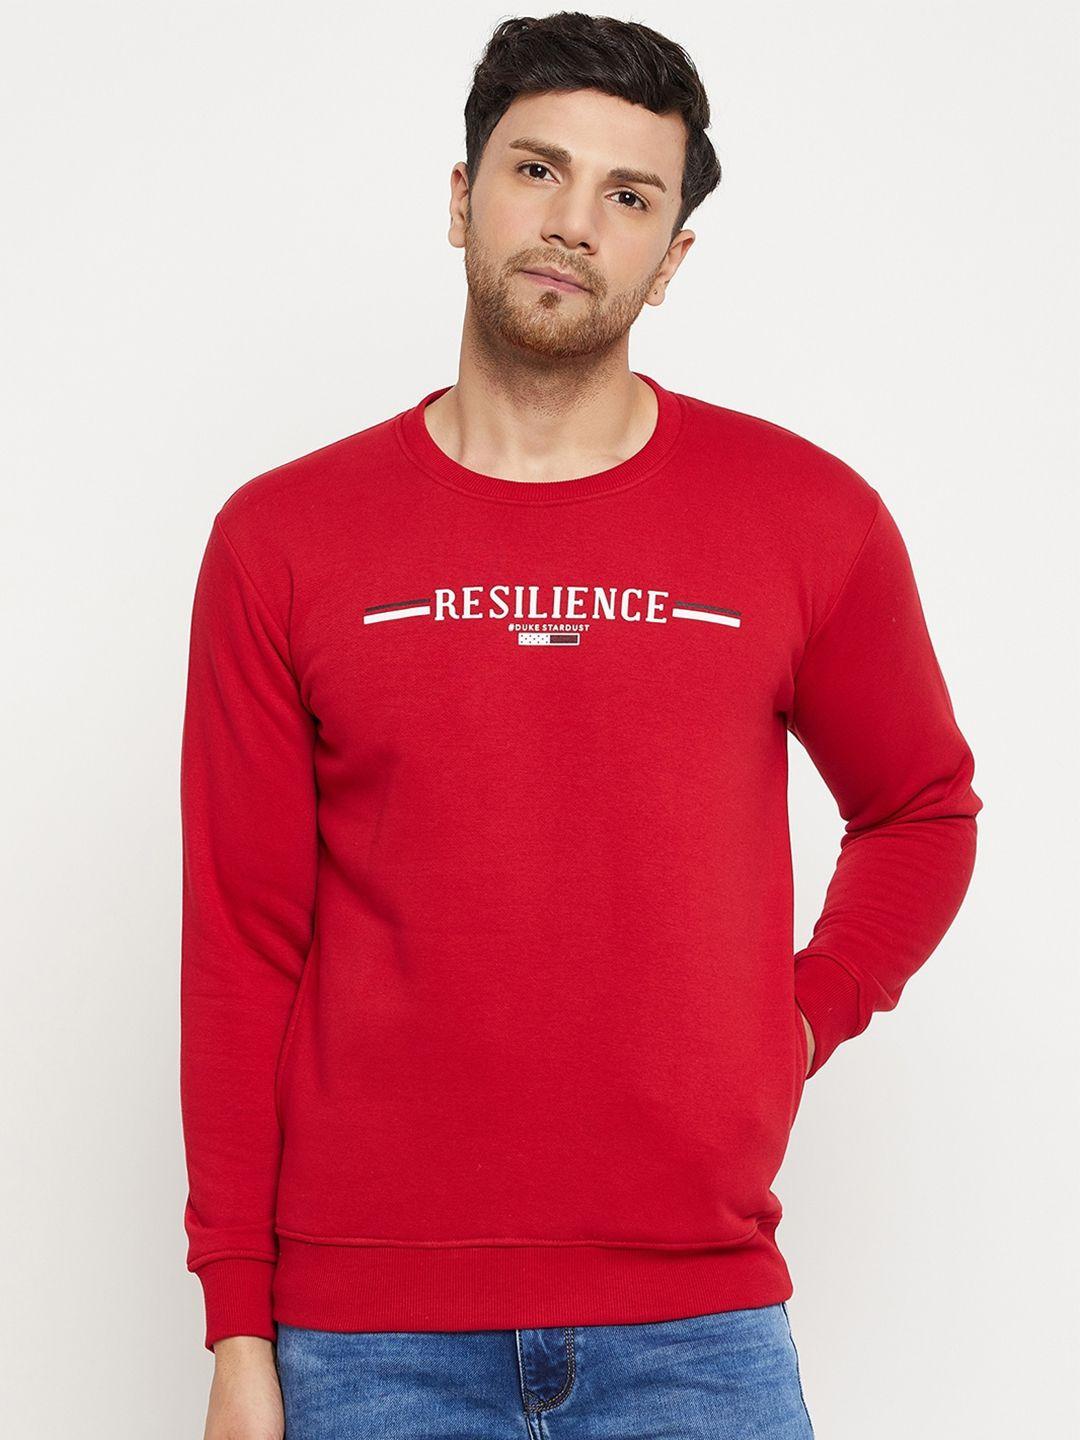 duke-typographic-printed-fleece-sweatshirt